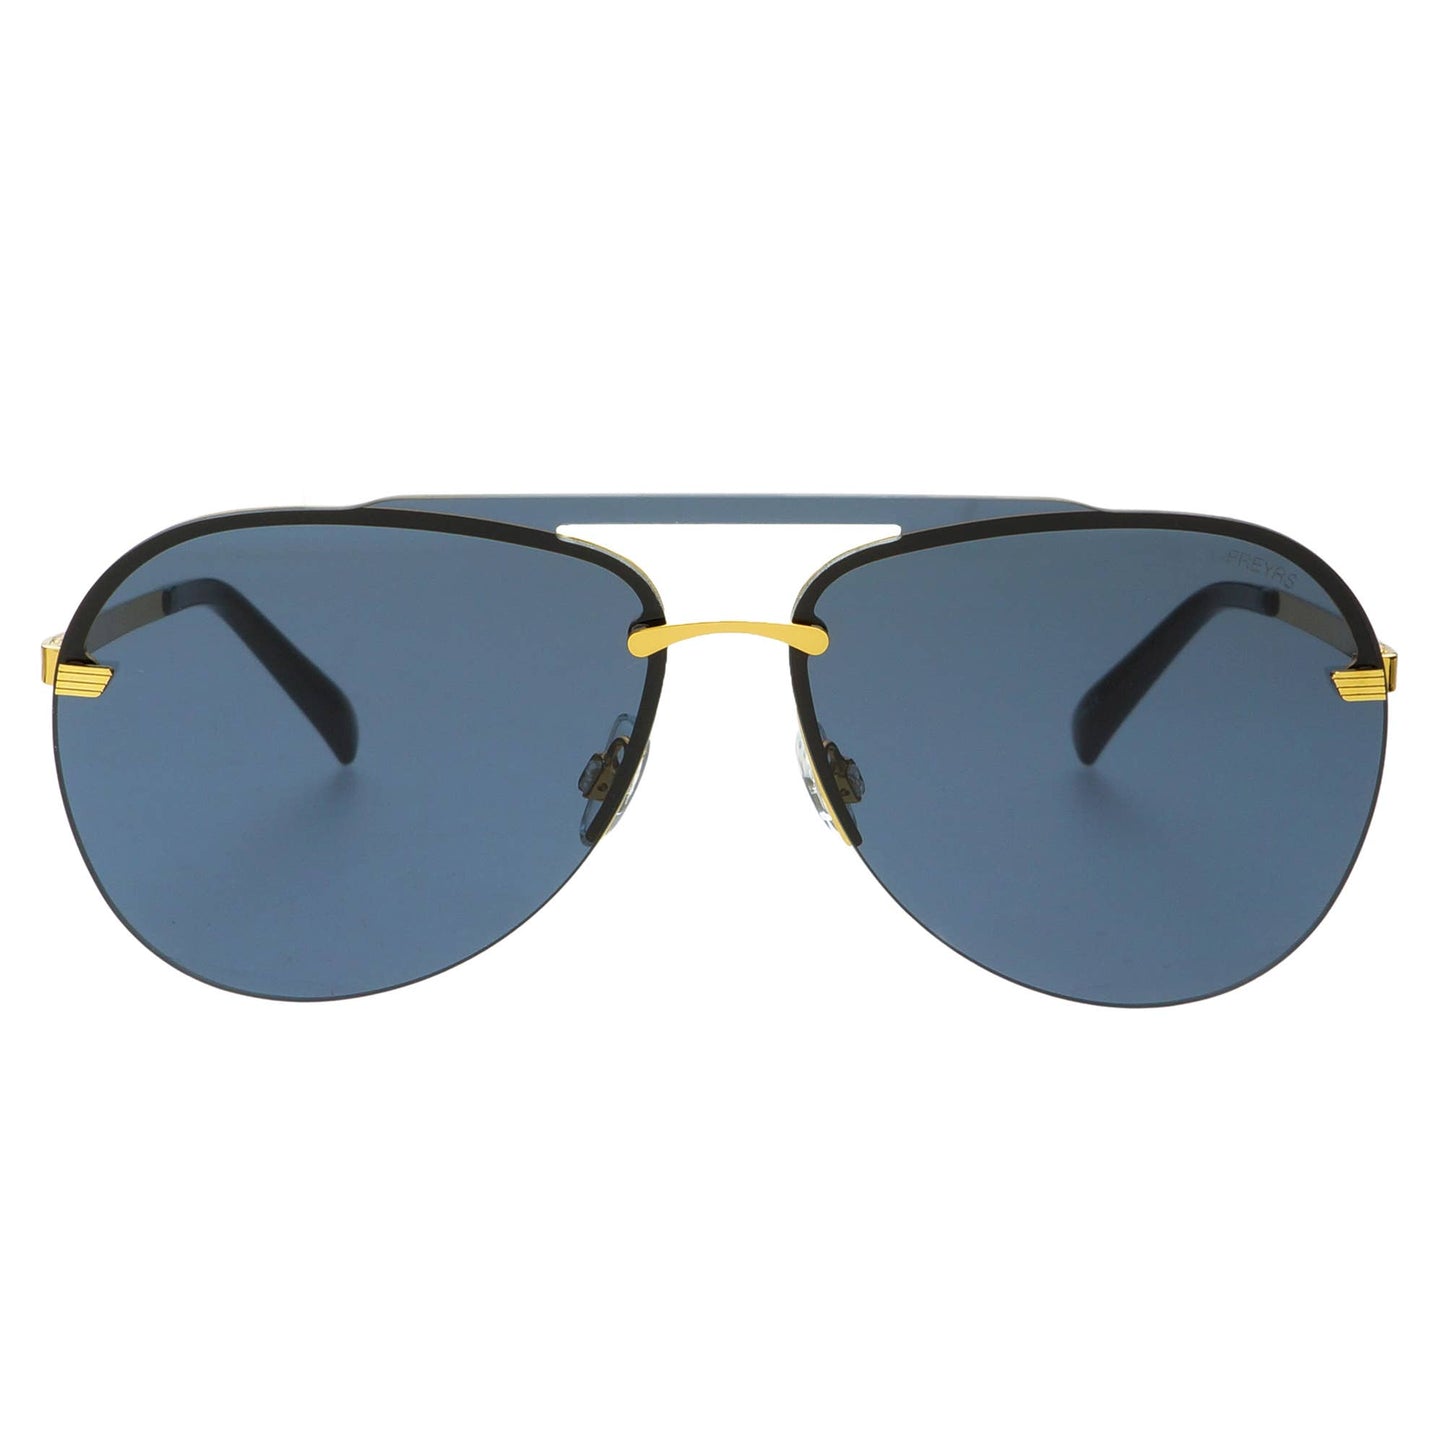 Rio Sunglasses: Black